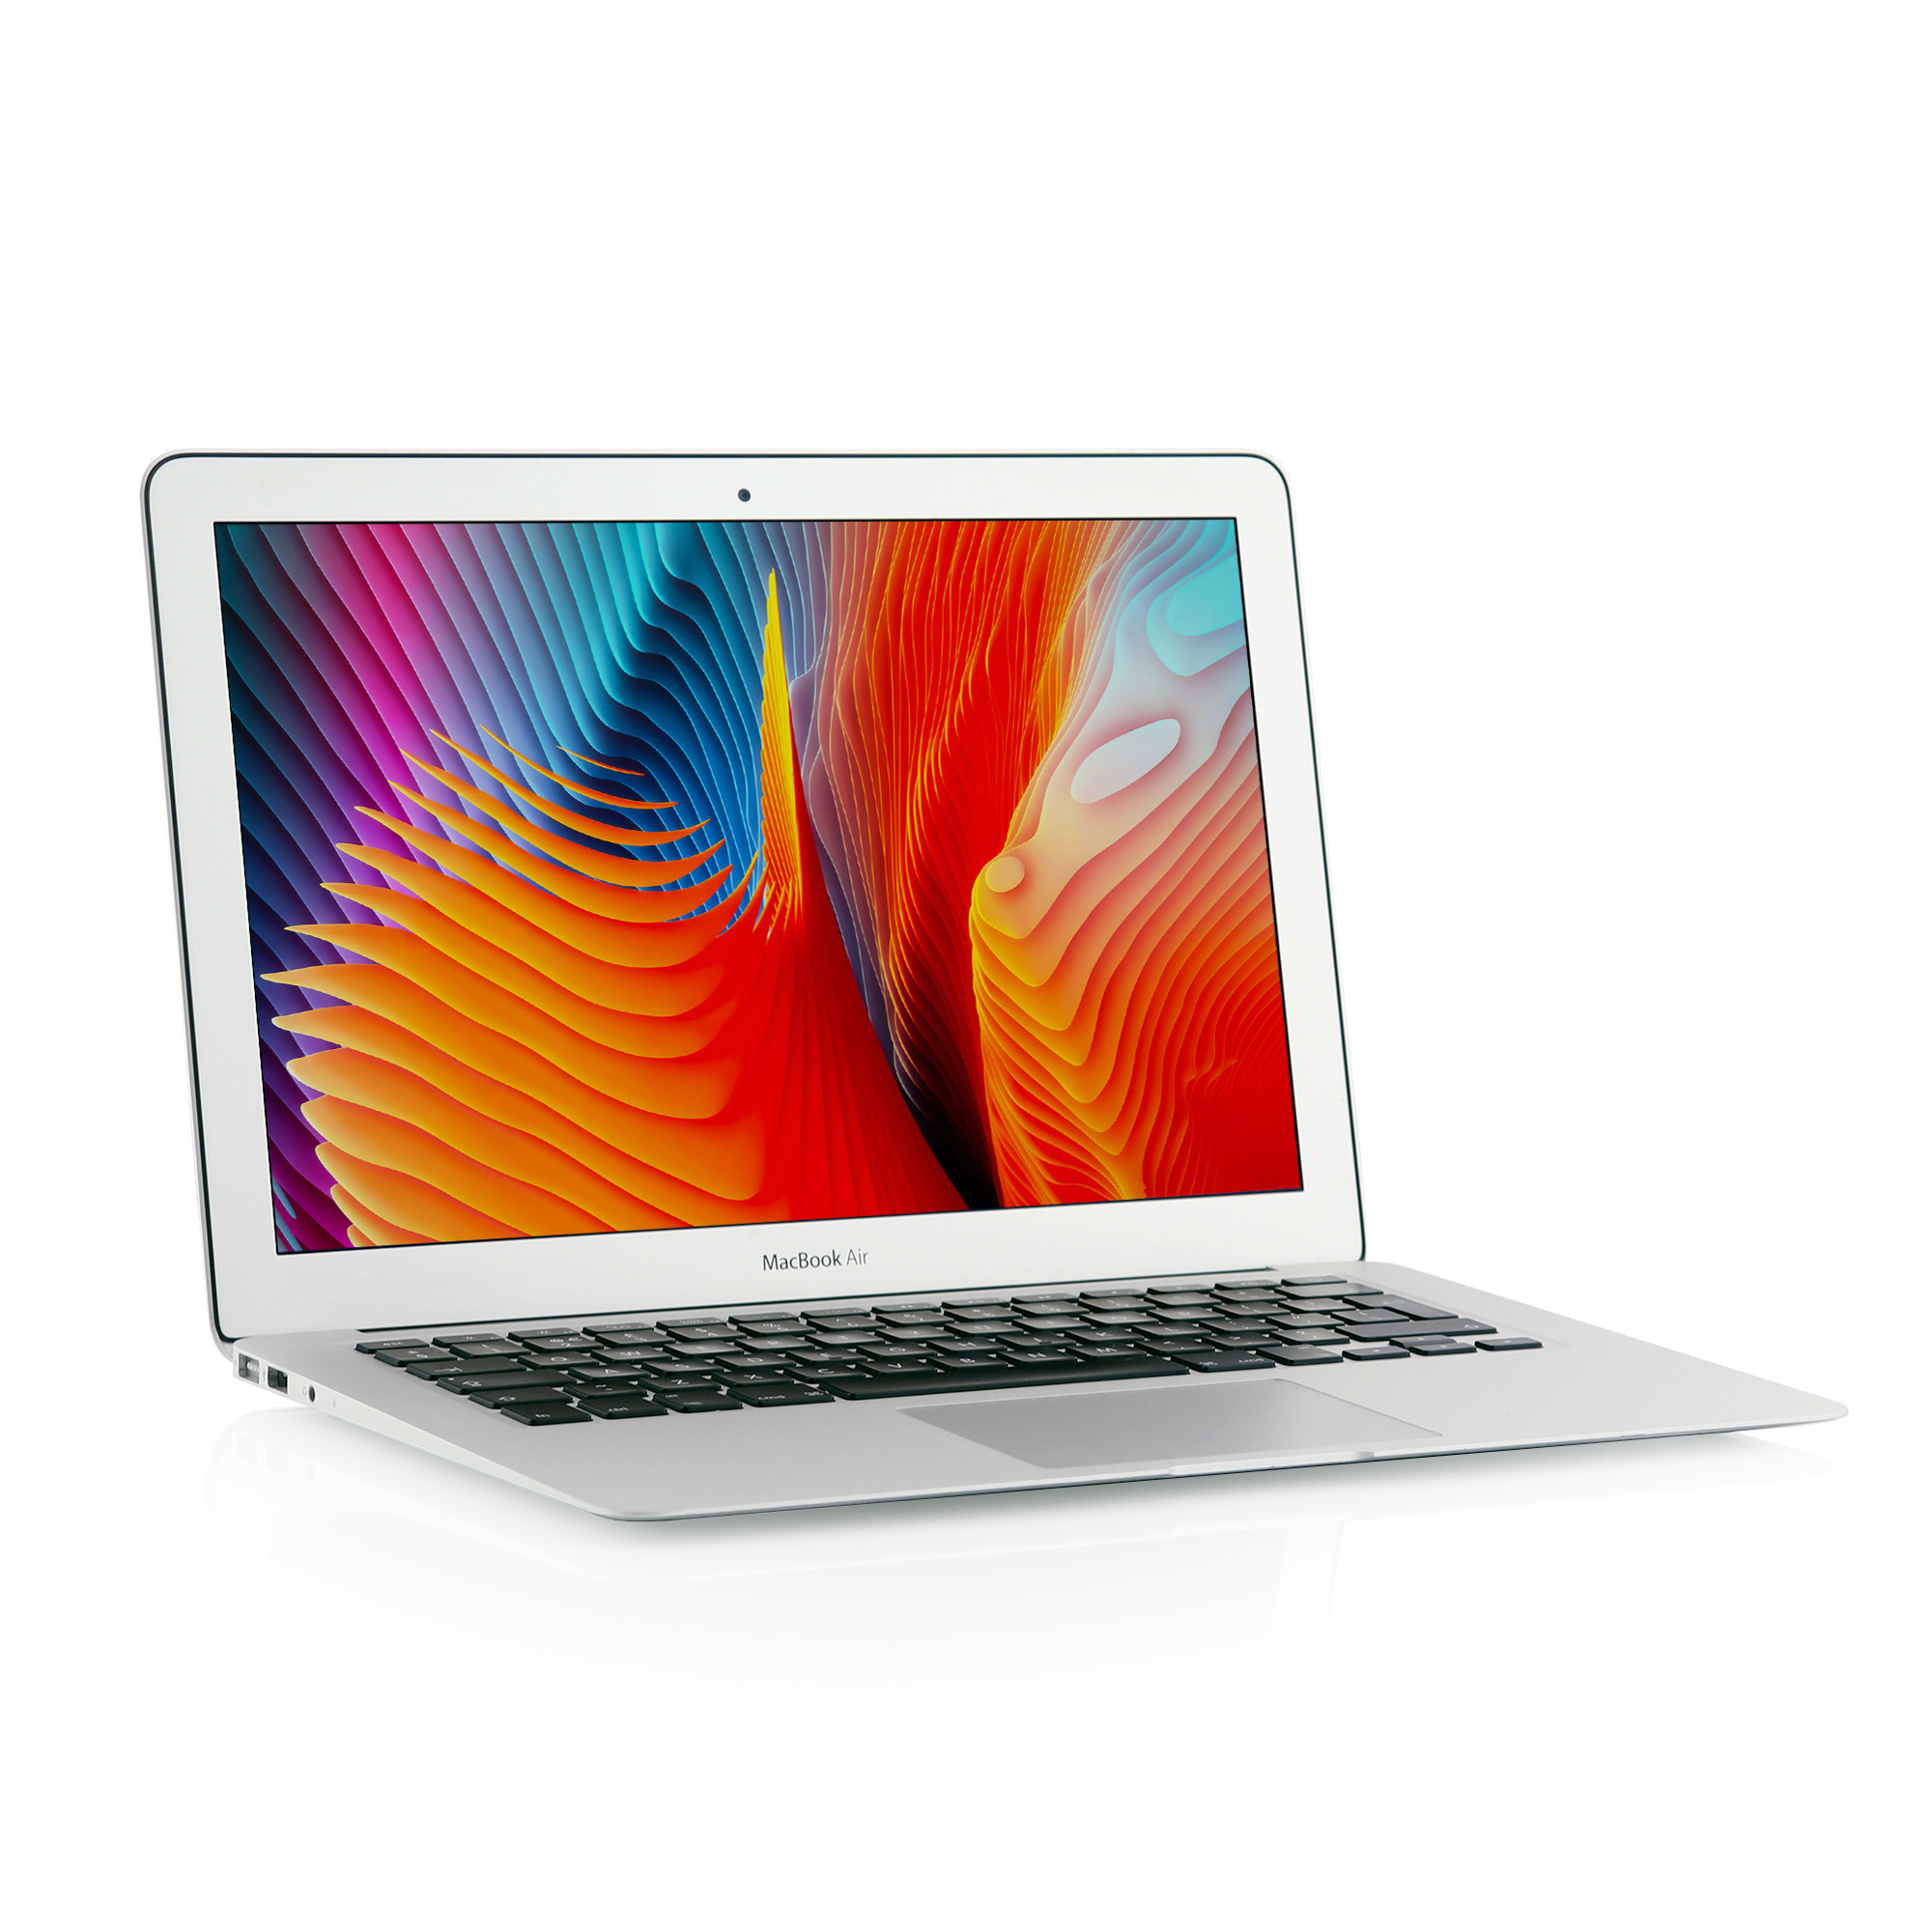 2015 Apple MacBook Air 13-inch Intel i5 1.60 GHz 2-core 8GB 128GB - Silver